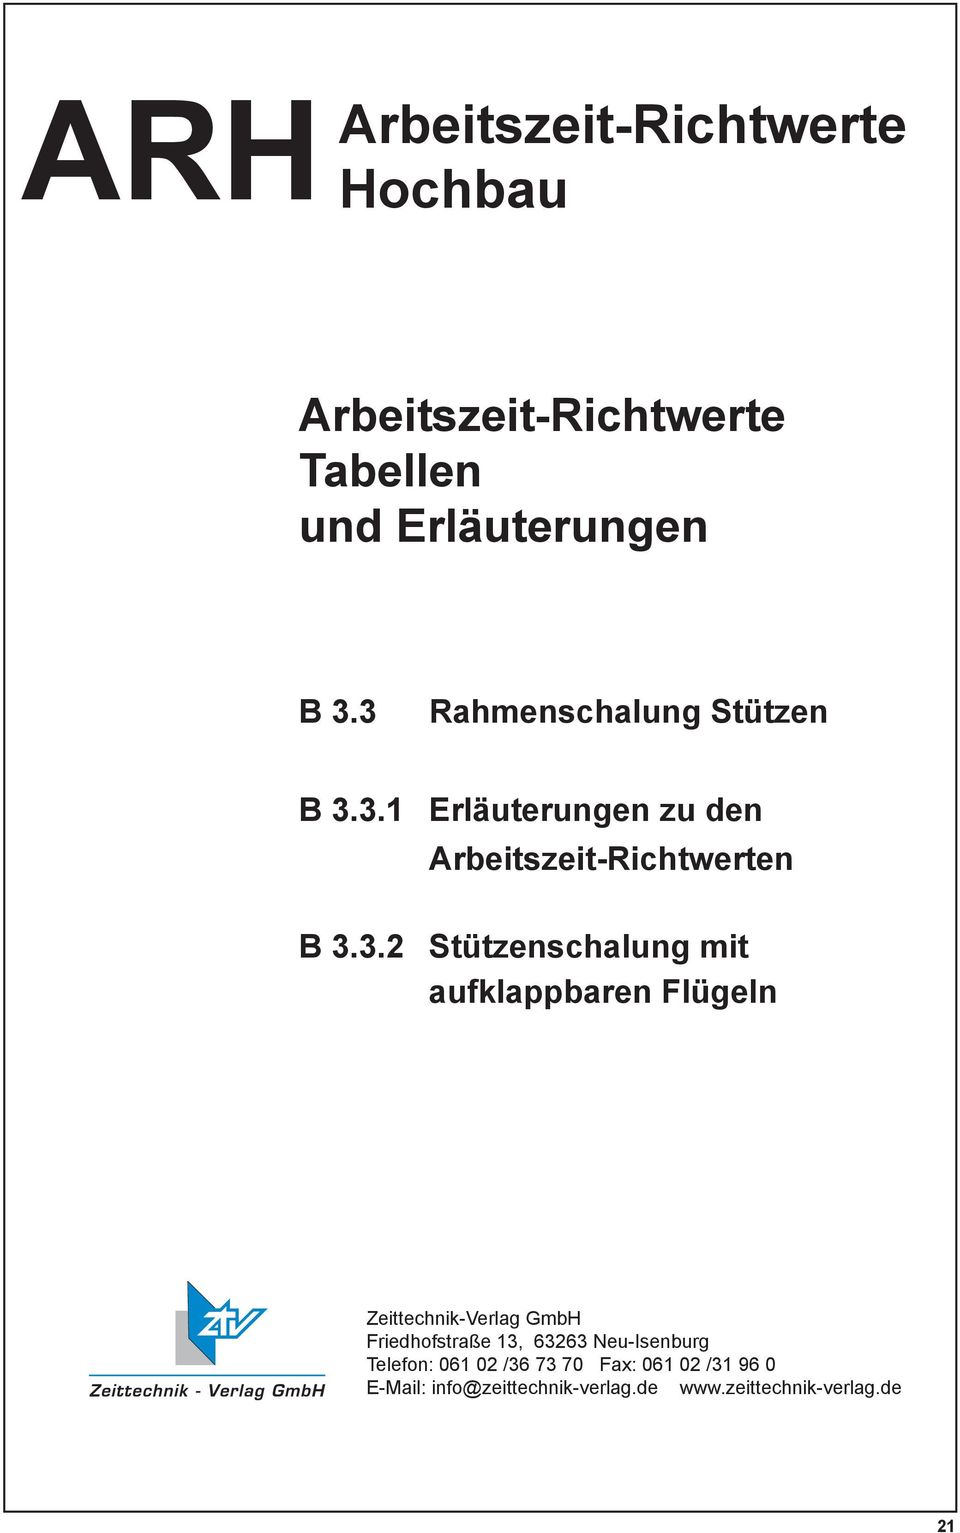 Stützenschalung mit aufklappbaren Flügeln Zeittechnik-Verlag GmbH Friedhofstraße 13, 63263